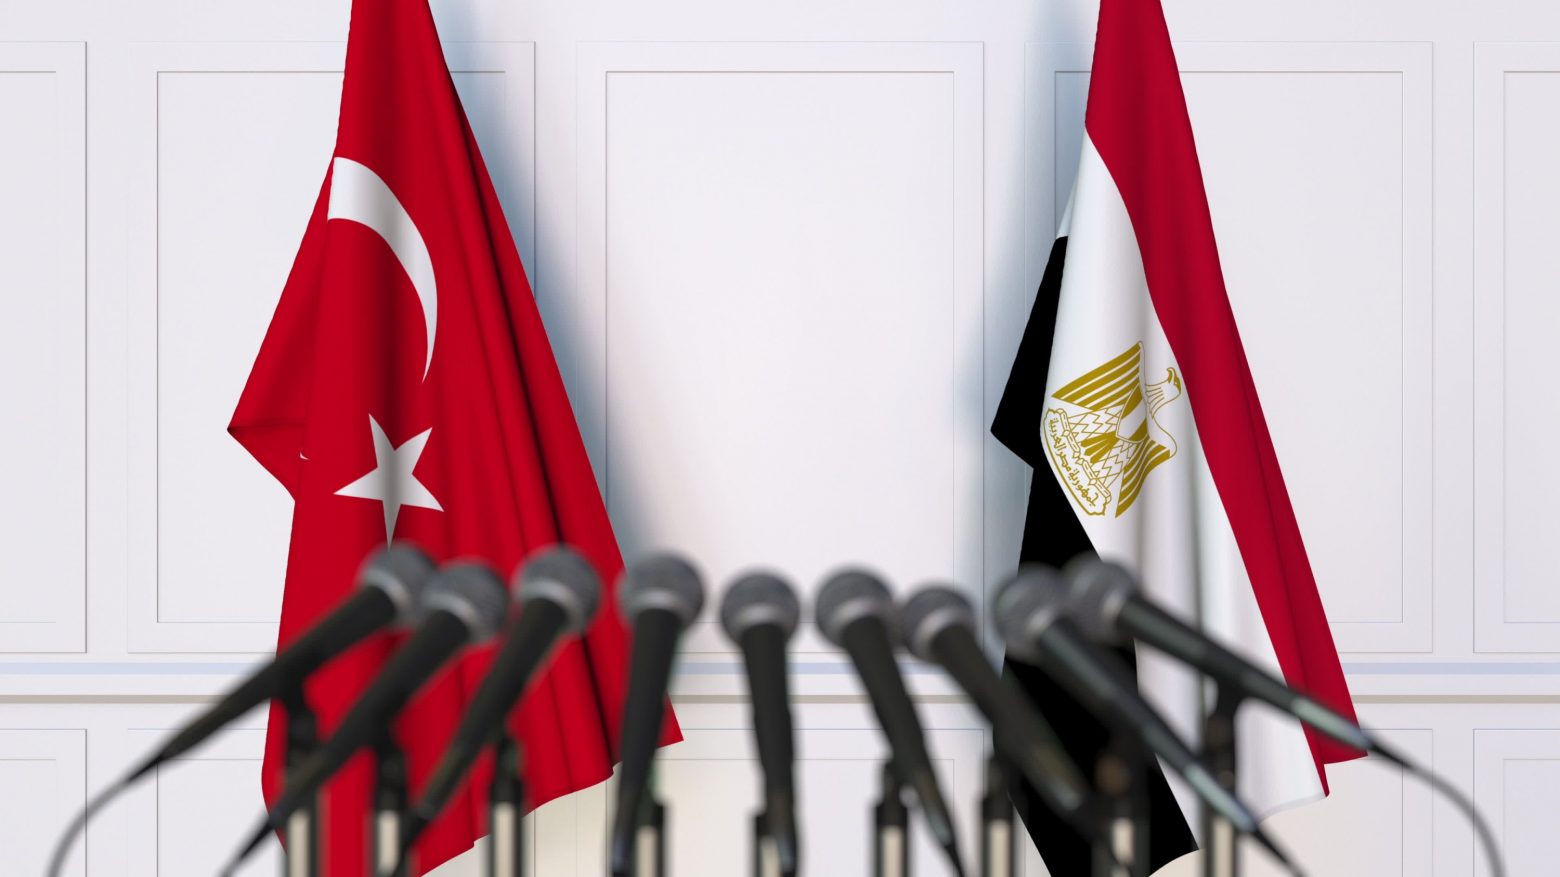 Αίγυπτος: Πρώτη επίσκεψη τούρκου υπουργού μετά από εννέα χρόνια εντάσεων - Η πορεία εξομάλυνσης